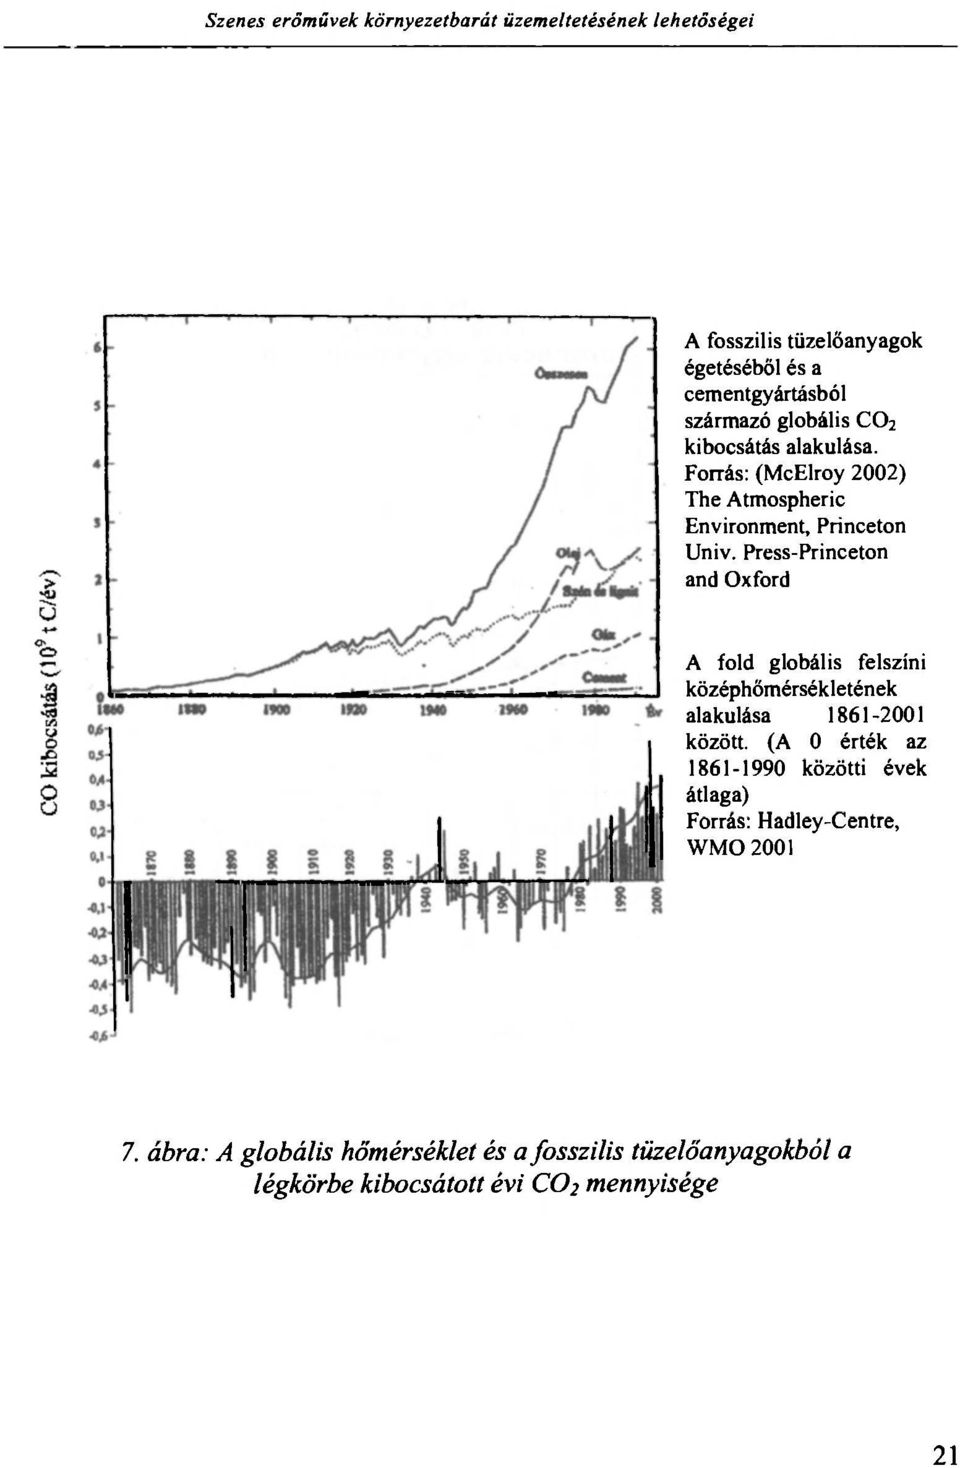 Press-Princeton and Oxford A fold globális felszíni középhőmérsékletének alakulása 1861-2001 között.